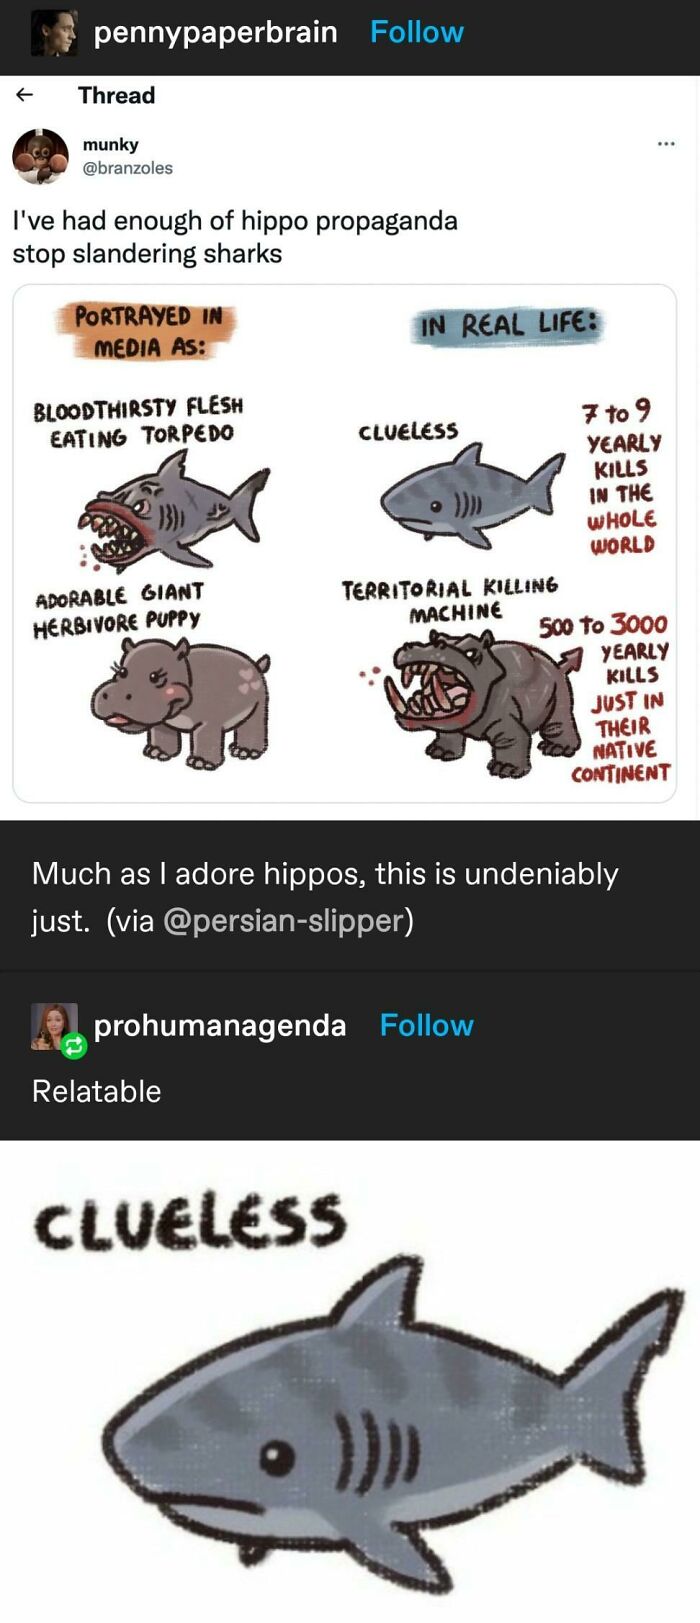 Hippo Propaganda